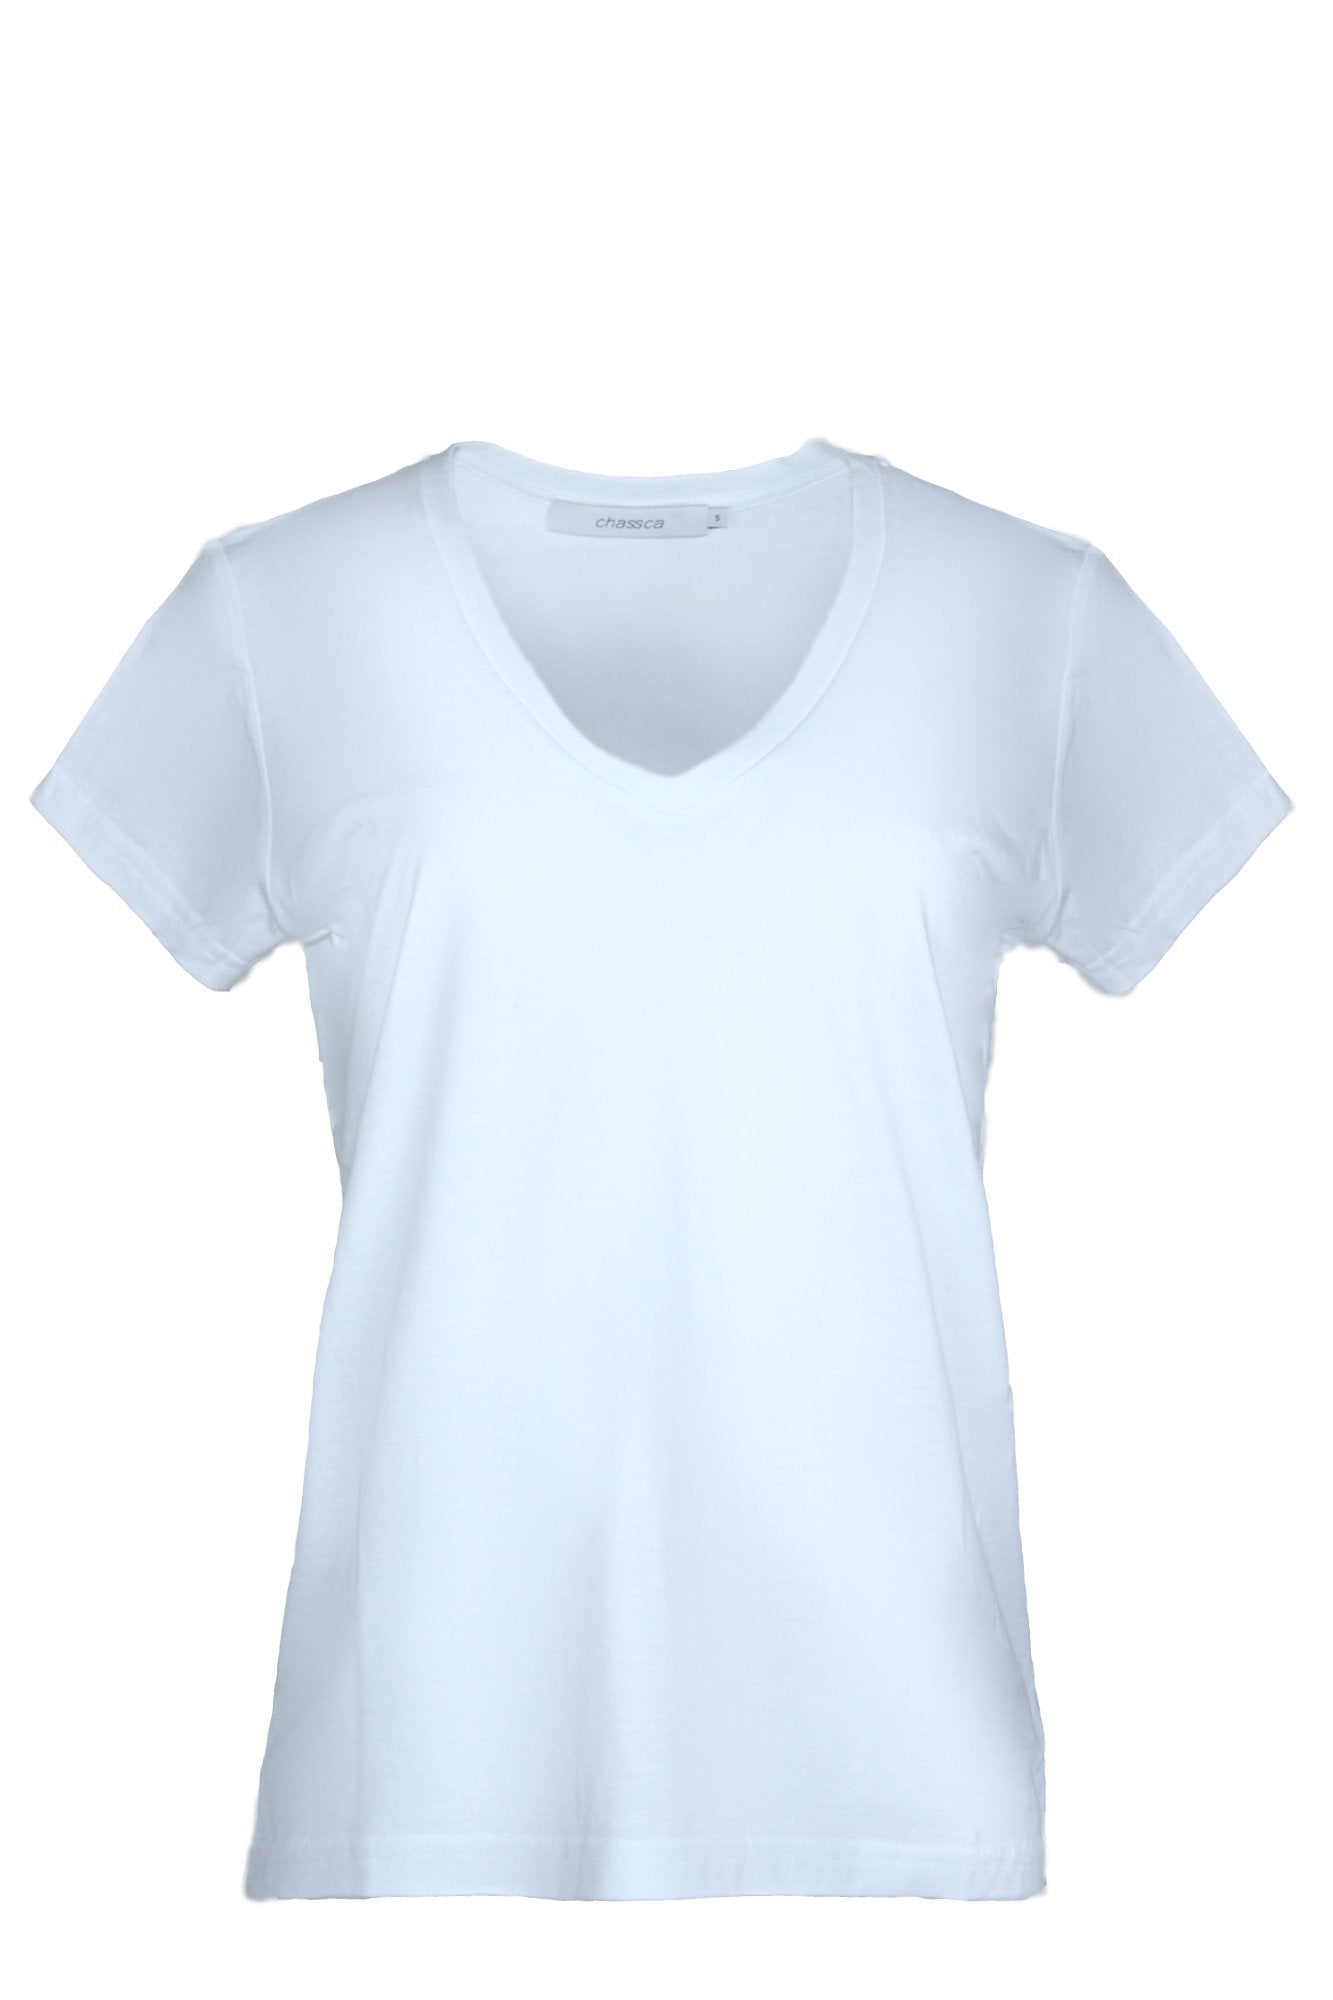 chassca basic V-neck loose fit t-shirt - Breakmood